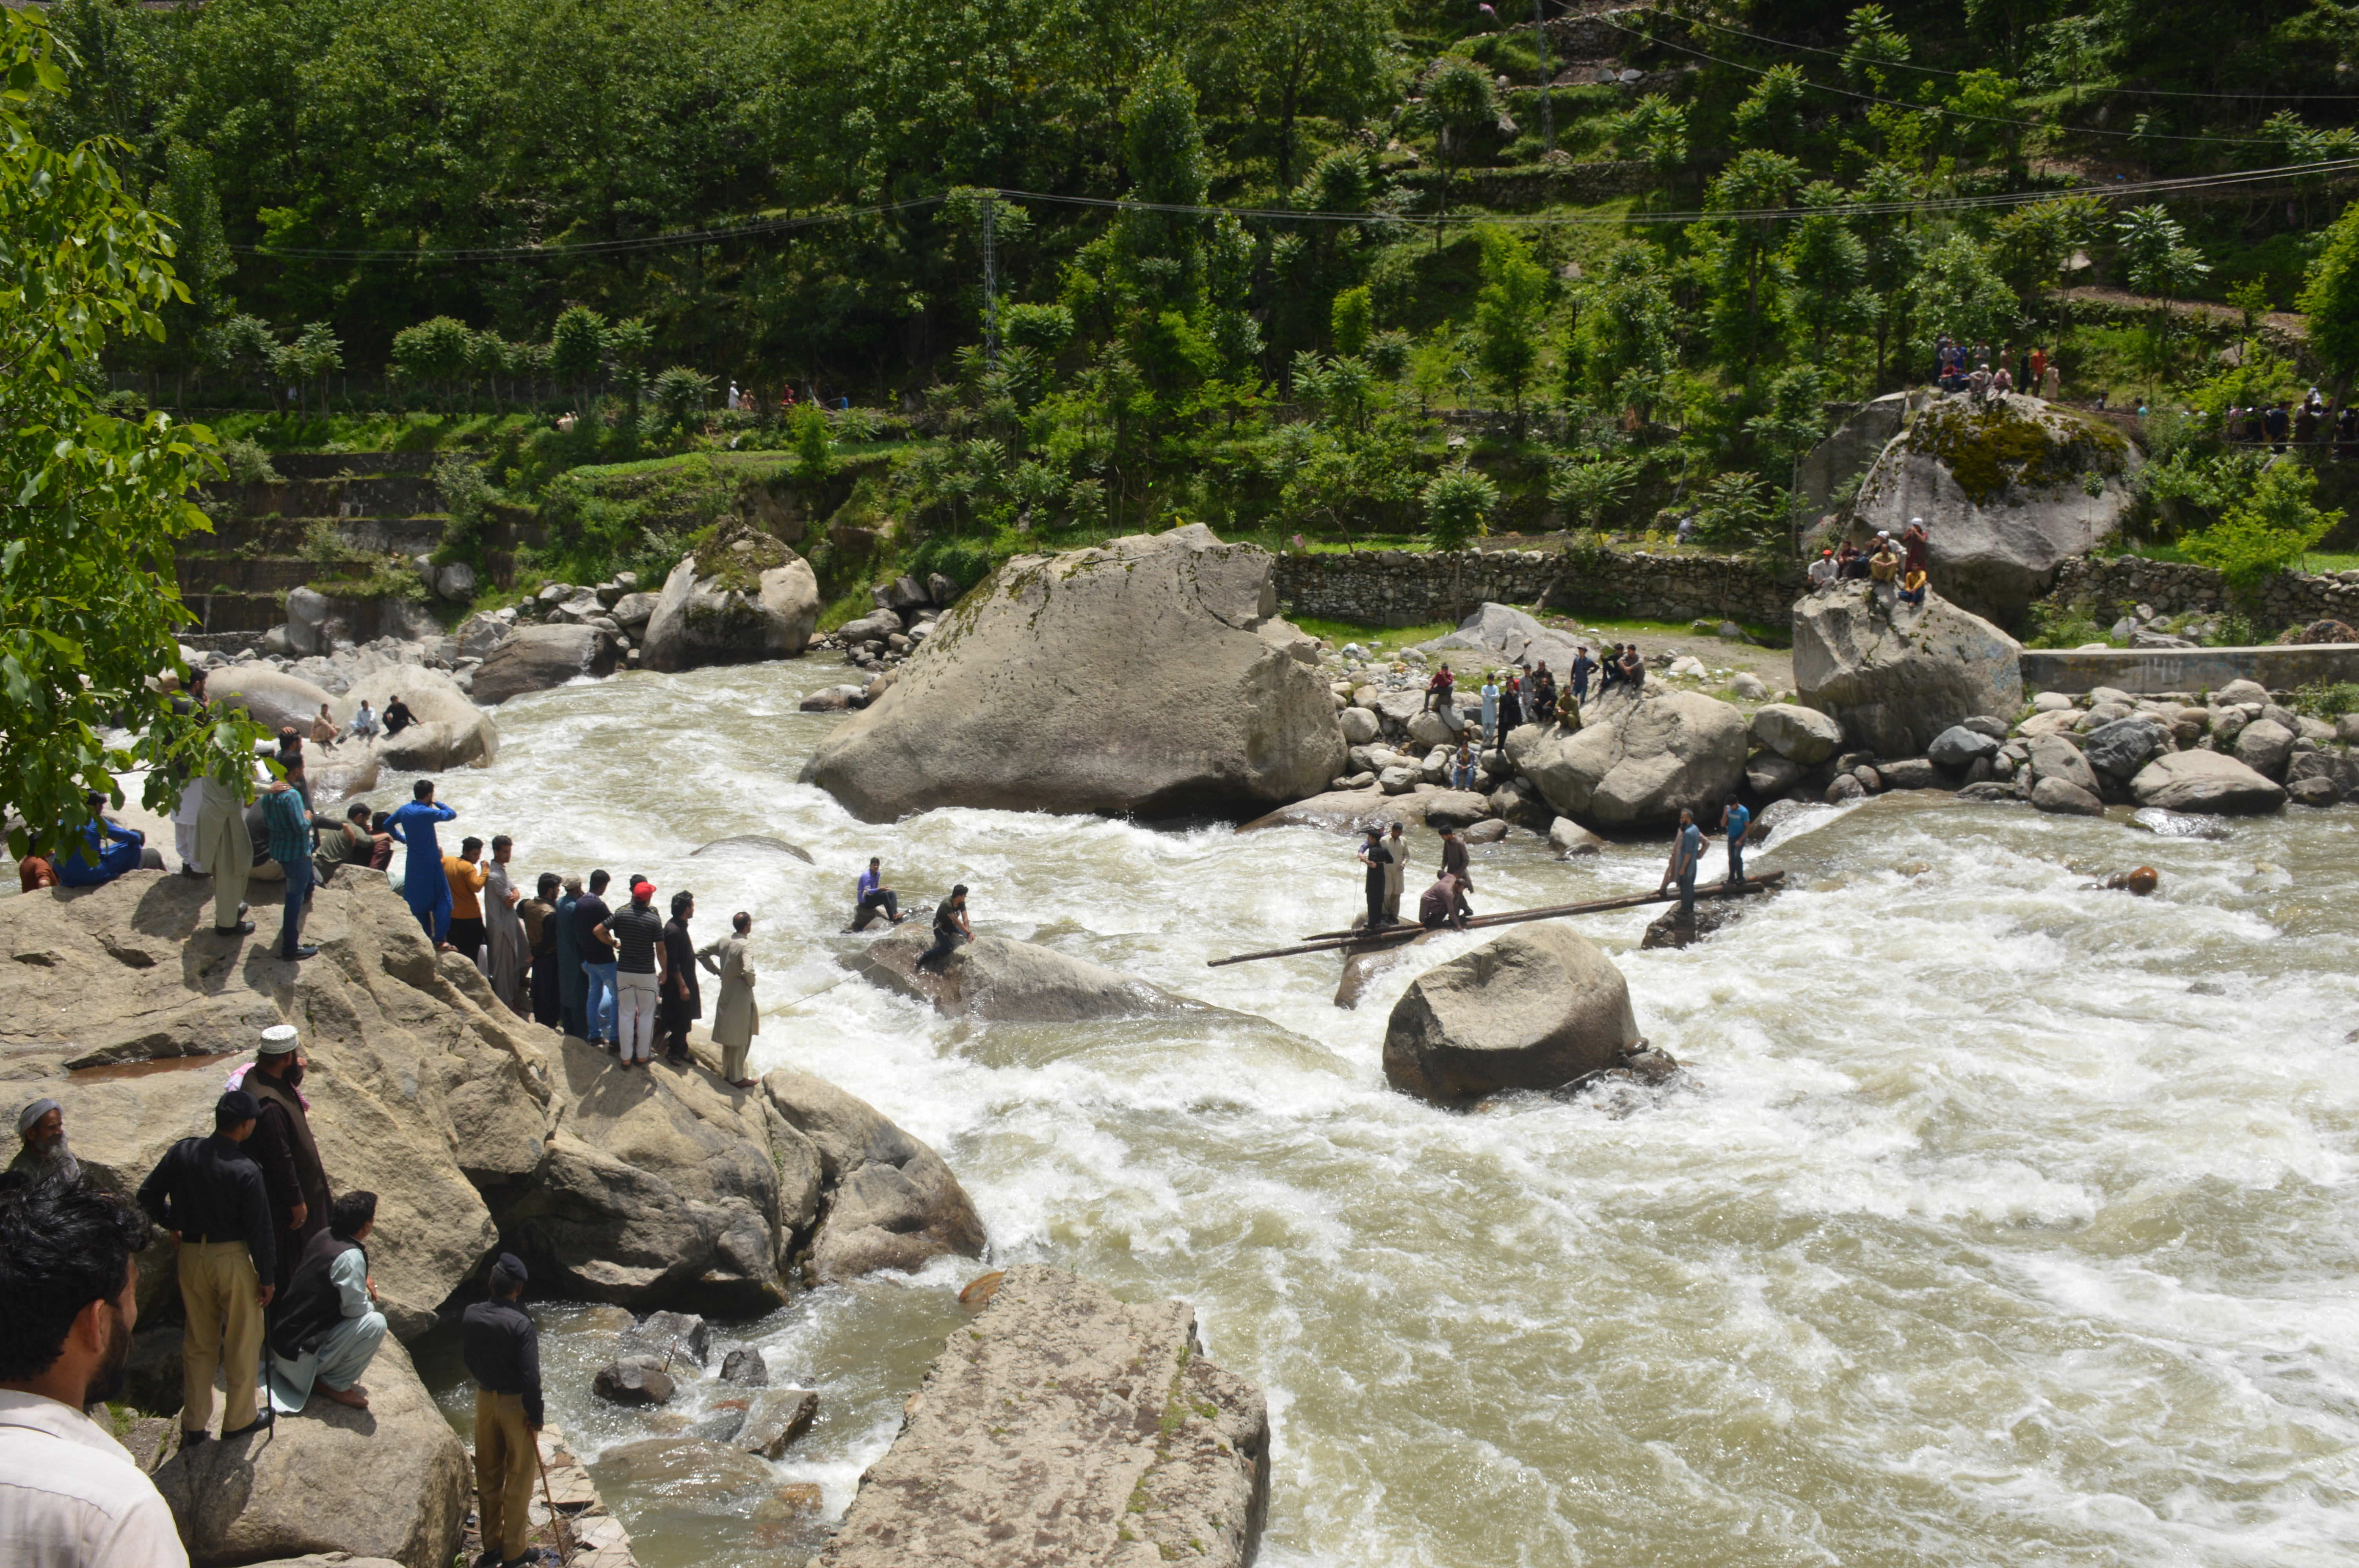 El accidente ocurrió durante la excursión de un grupo de estudiantes universitarios en la Cachemira paquistaní.